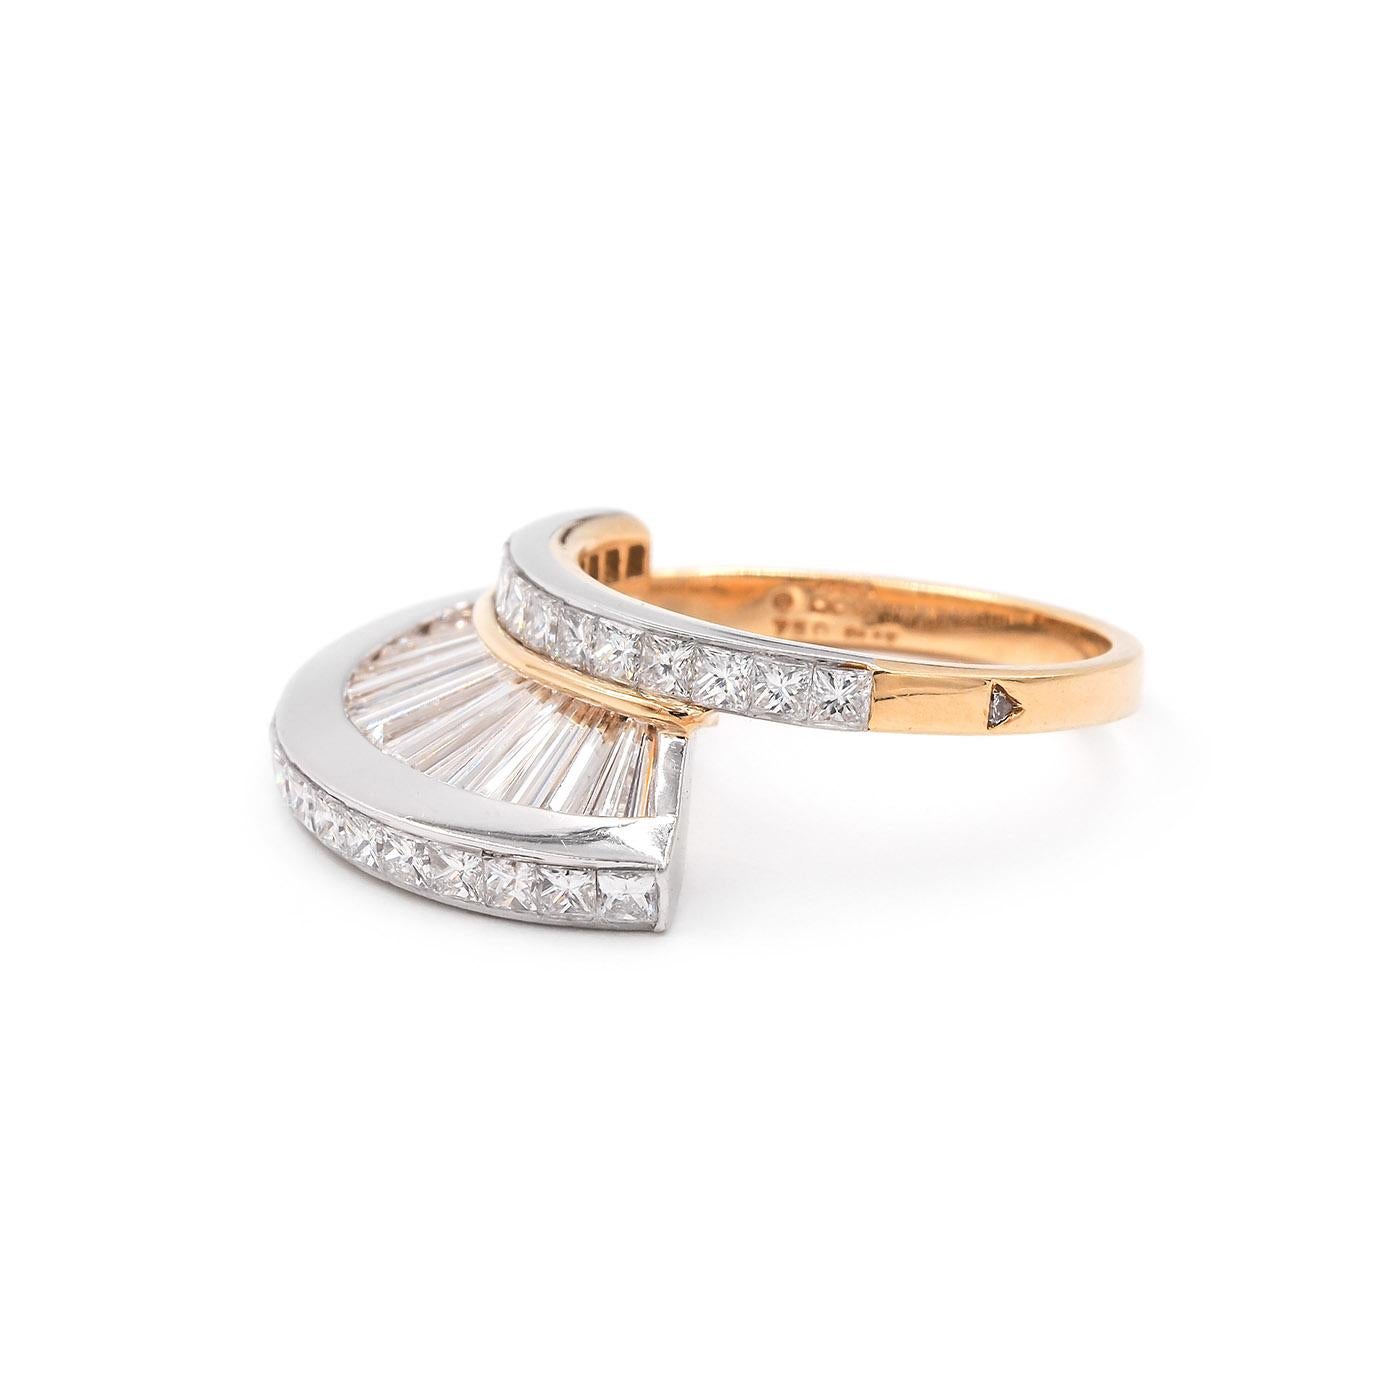 Vintage Baguette Cut & Princess Cut Diamond 'Fan' Ring Set by MWI Eloquence For Sale 4